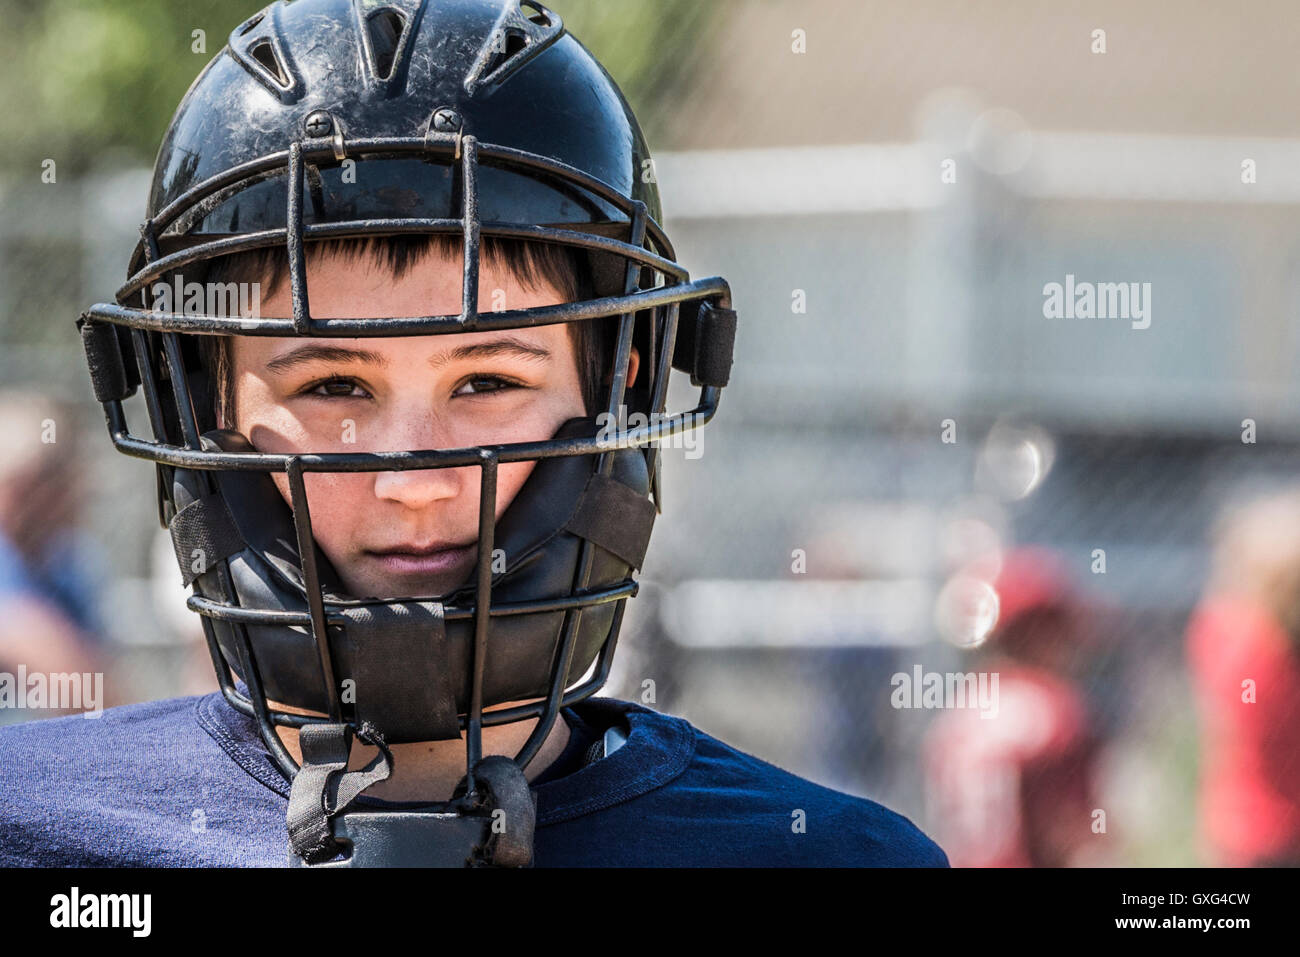 Kaukasische junge mit Baseball-Catcher-Maske Stockfotografie - Alamy